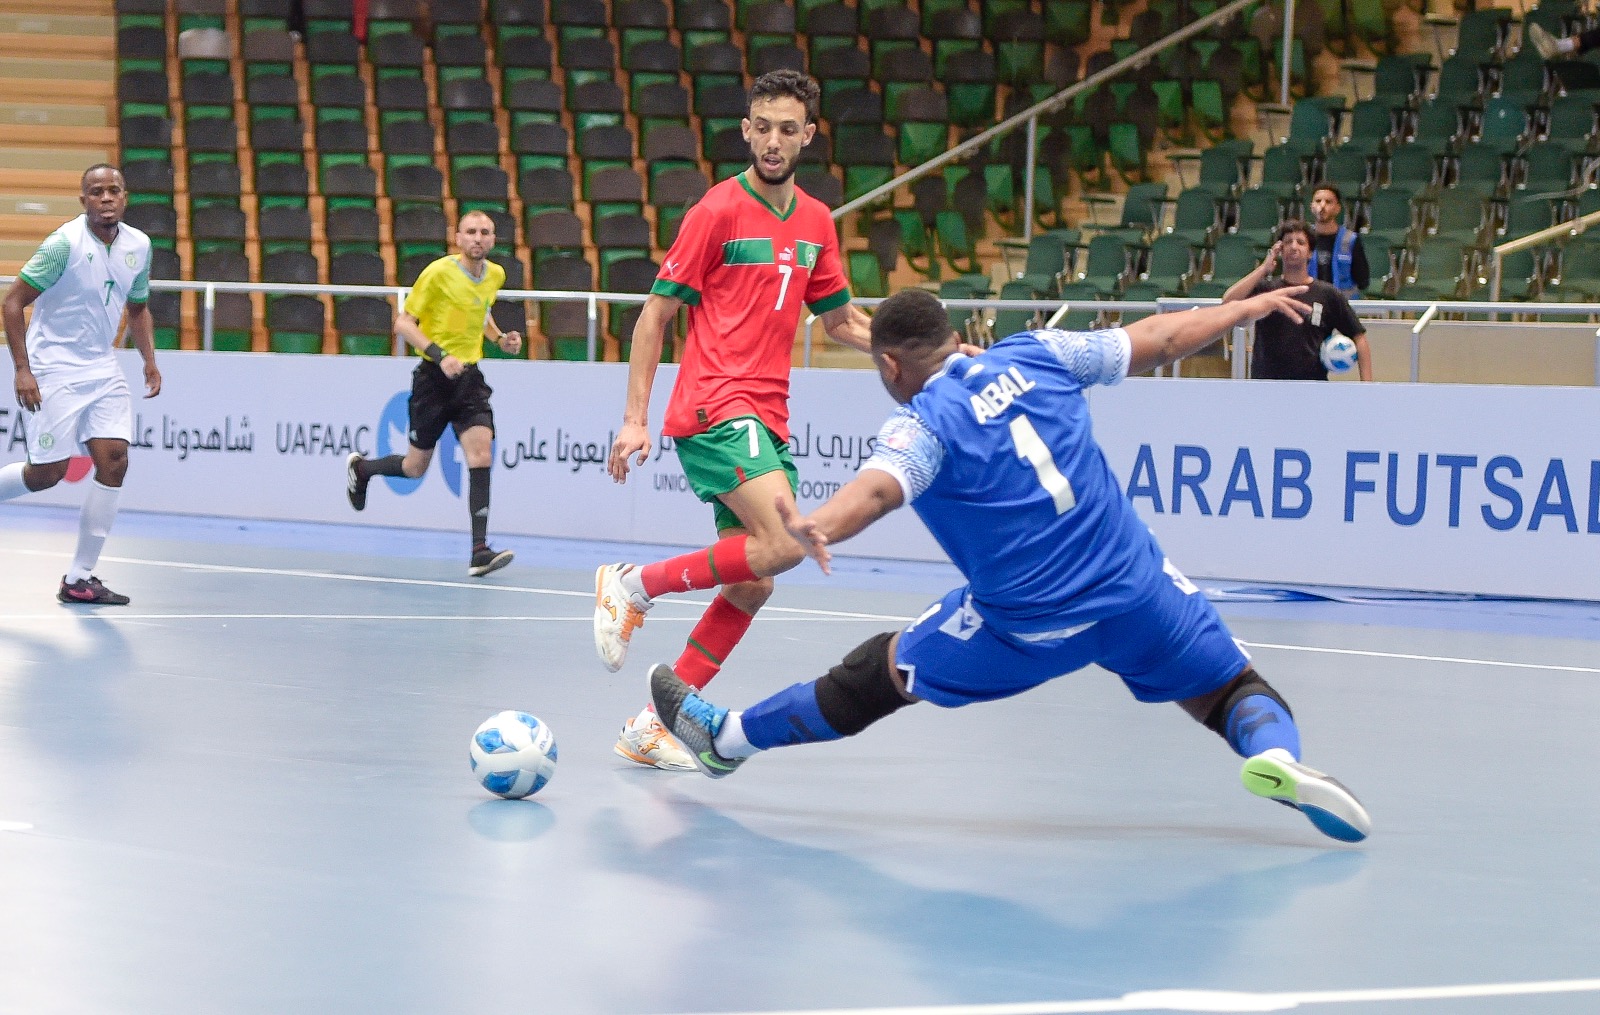 Championnat arabe de futsal : Les Lions de l'Atlas vainqueurs des Comores